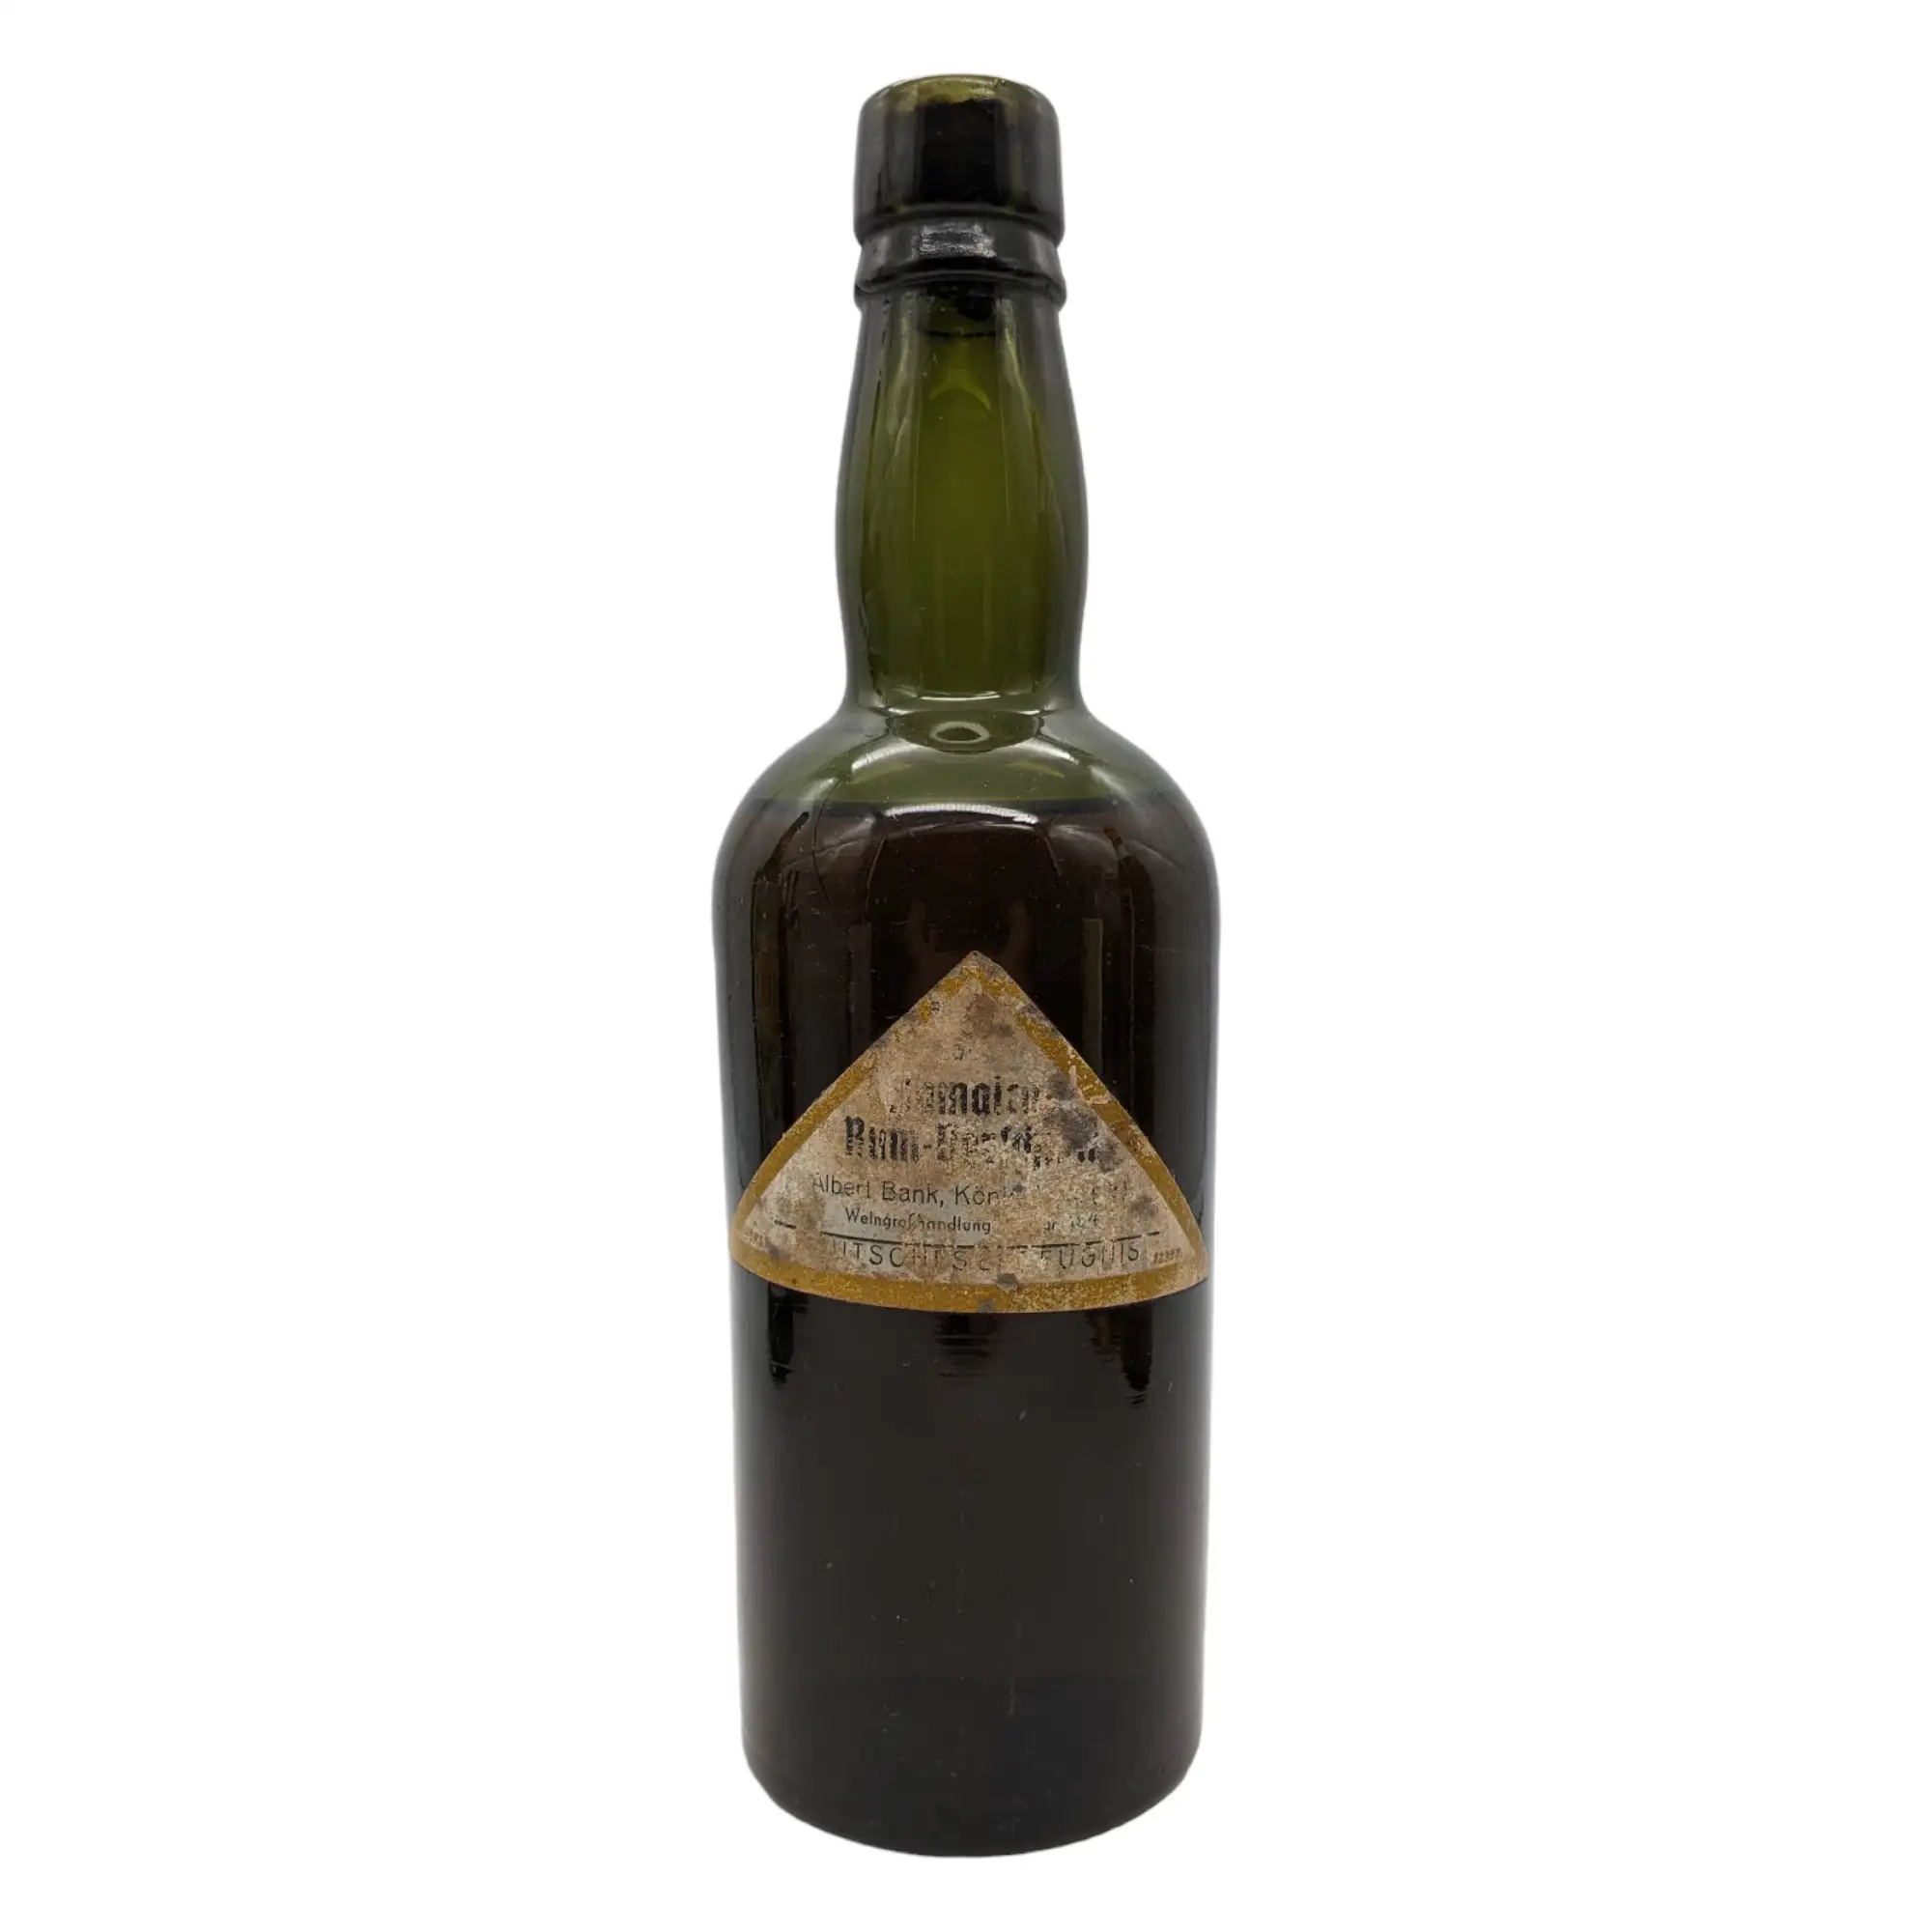 Image of the front of the bottle of the rum Jamaica Rum-Verschnitt